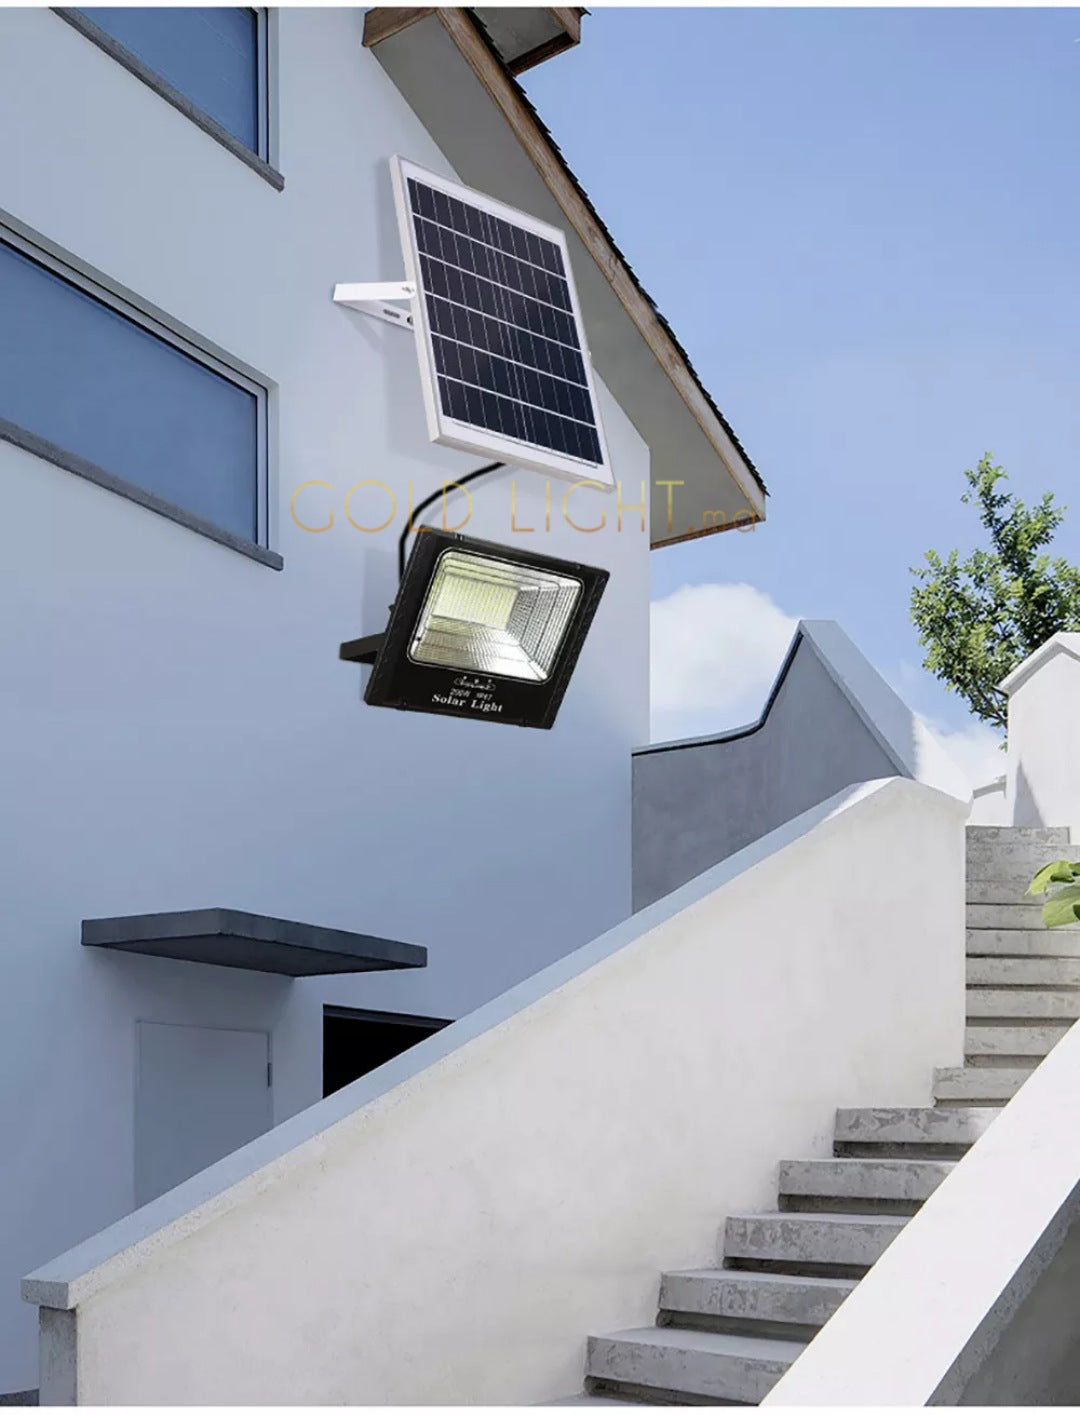 Projecteur solaire LED 300W puce Philips LUMILEDS 10200Lm